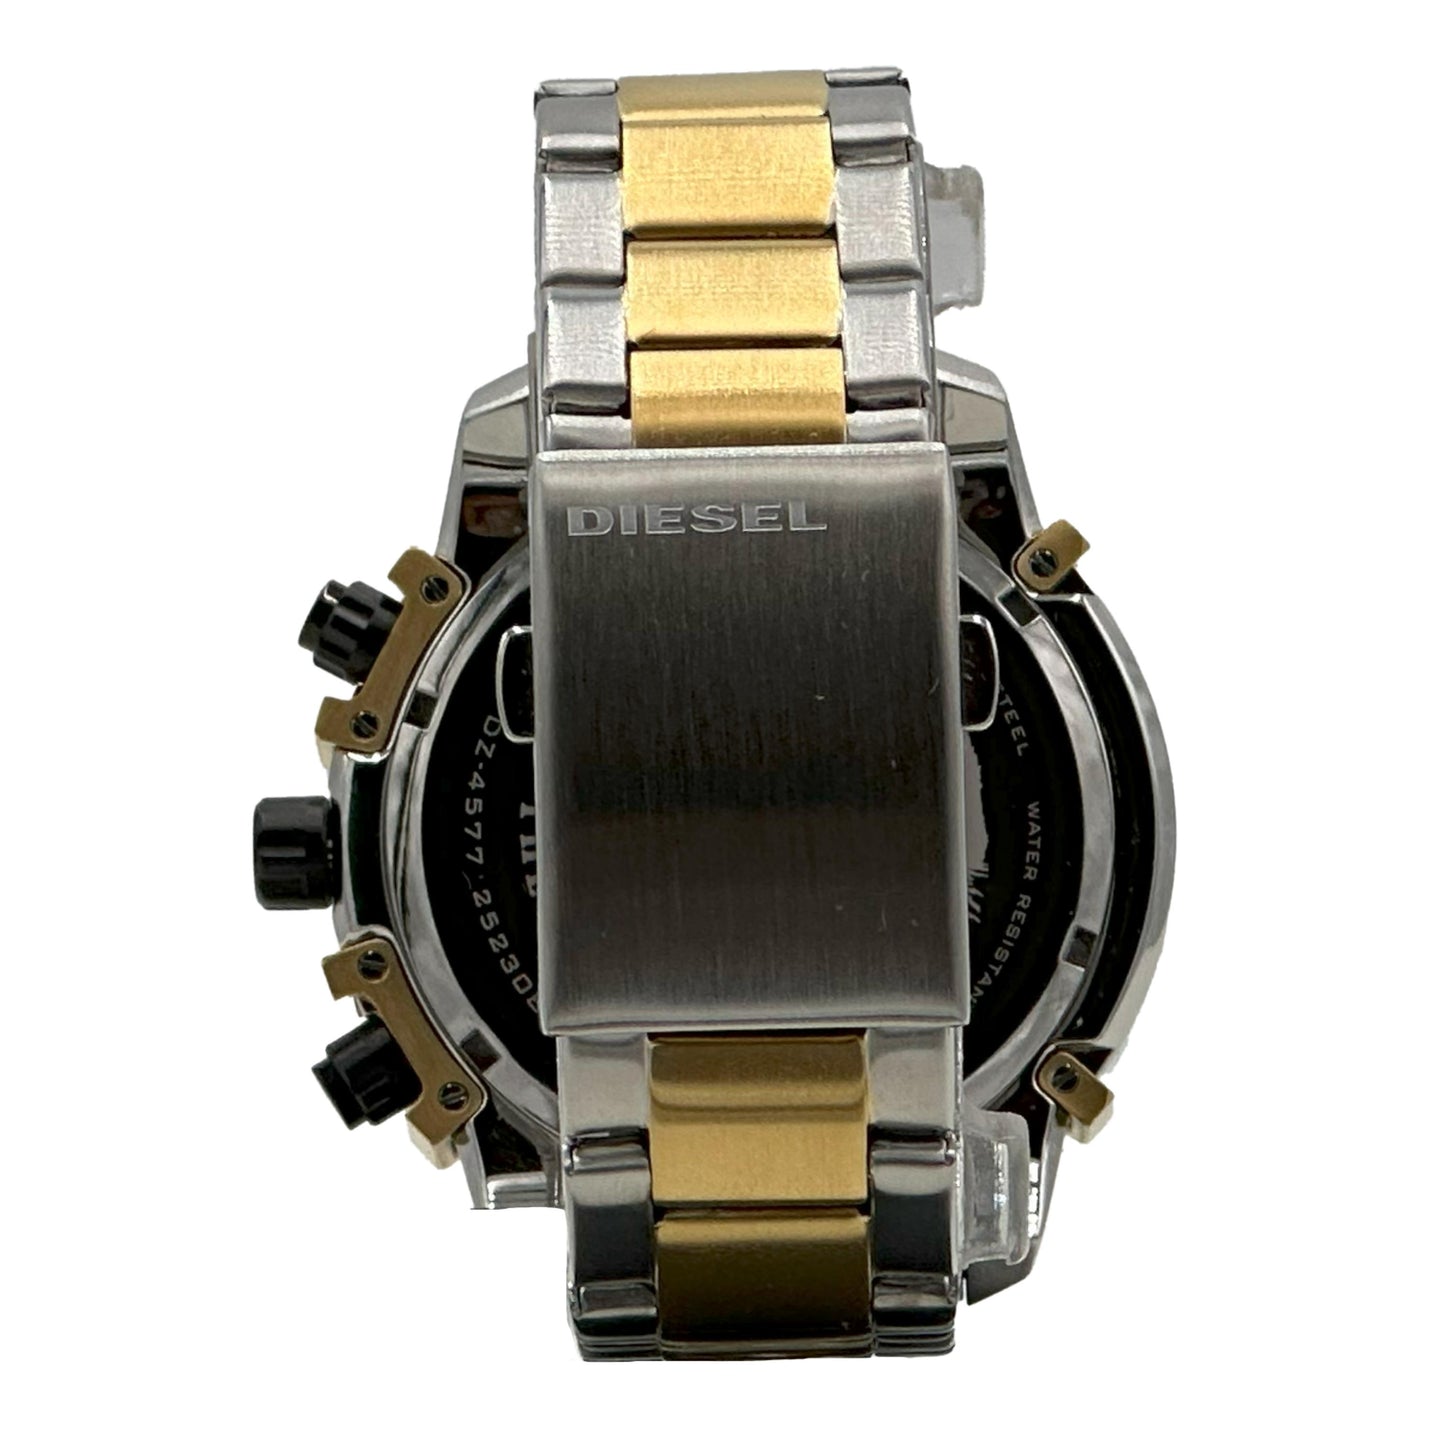 Diesel Men's Griffed Stainless Steel Chronograph Quartz Watch - DZ4577 - 698615142316